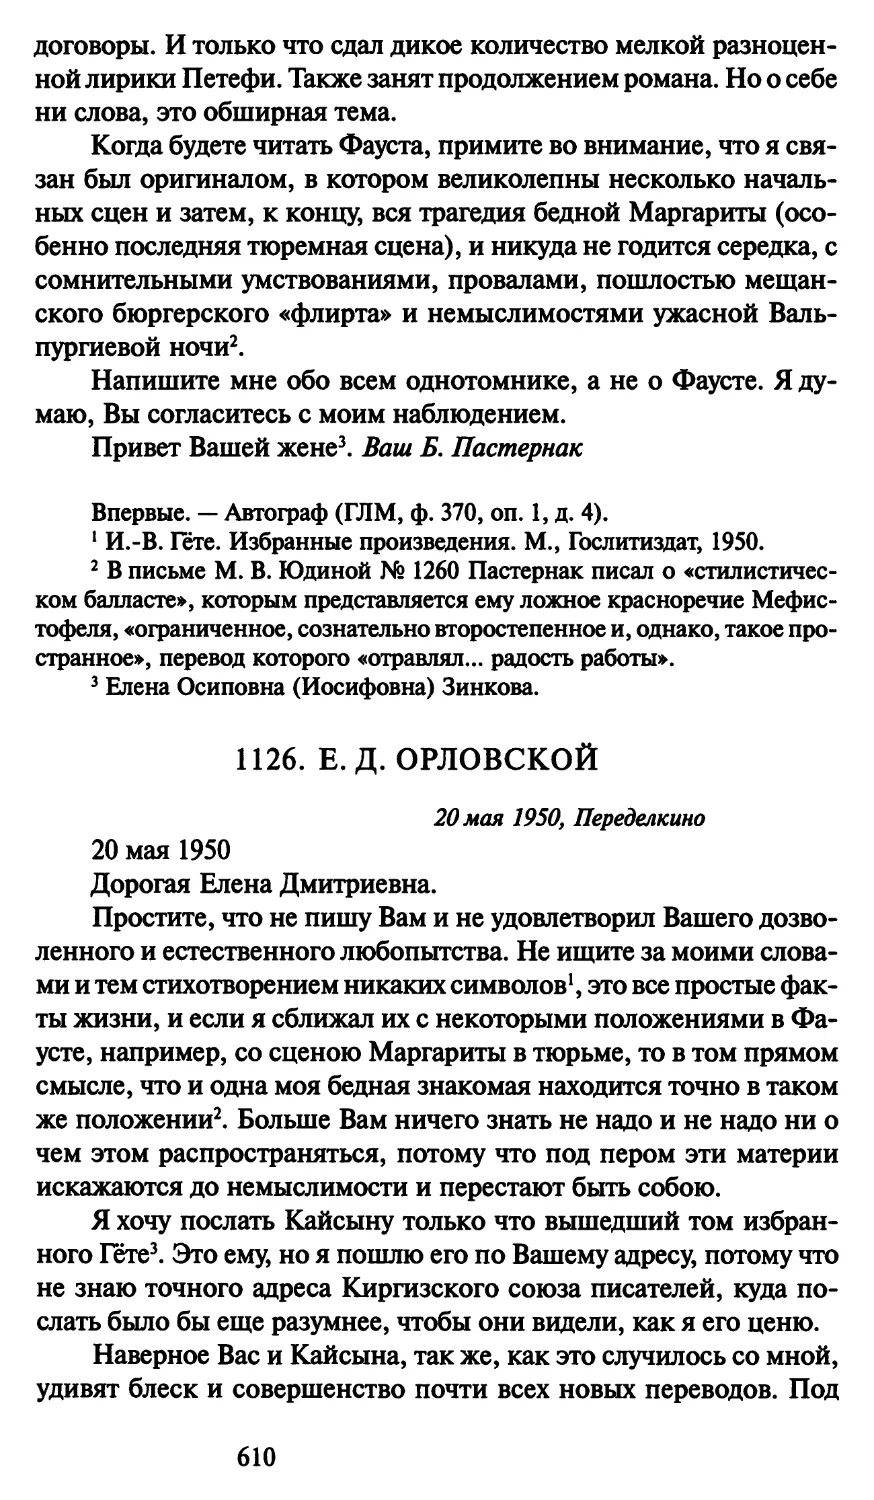 1126. Е. Д. Орловской 20 мая 1950